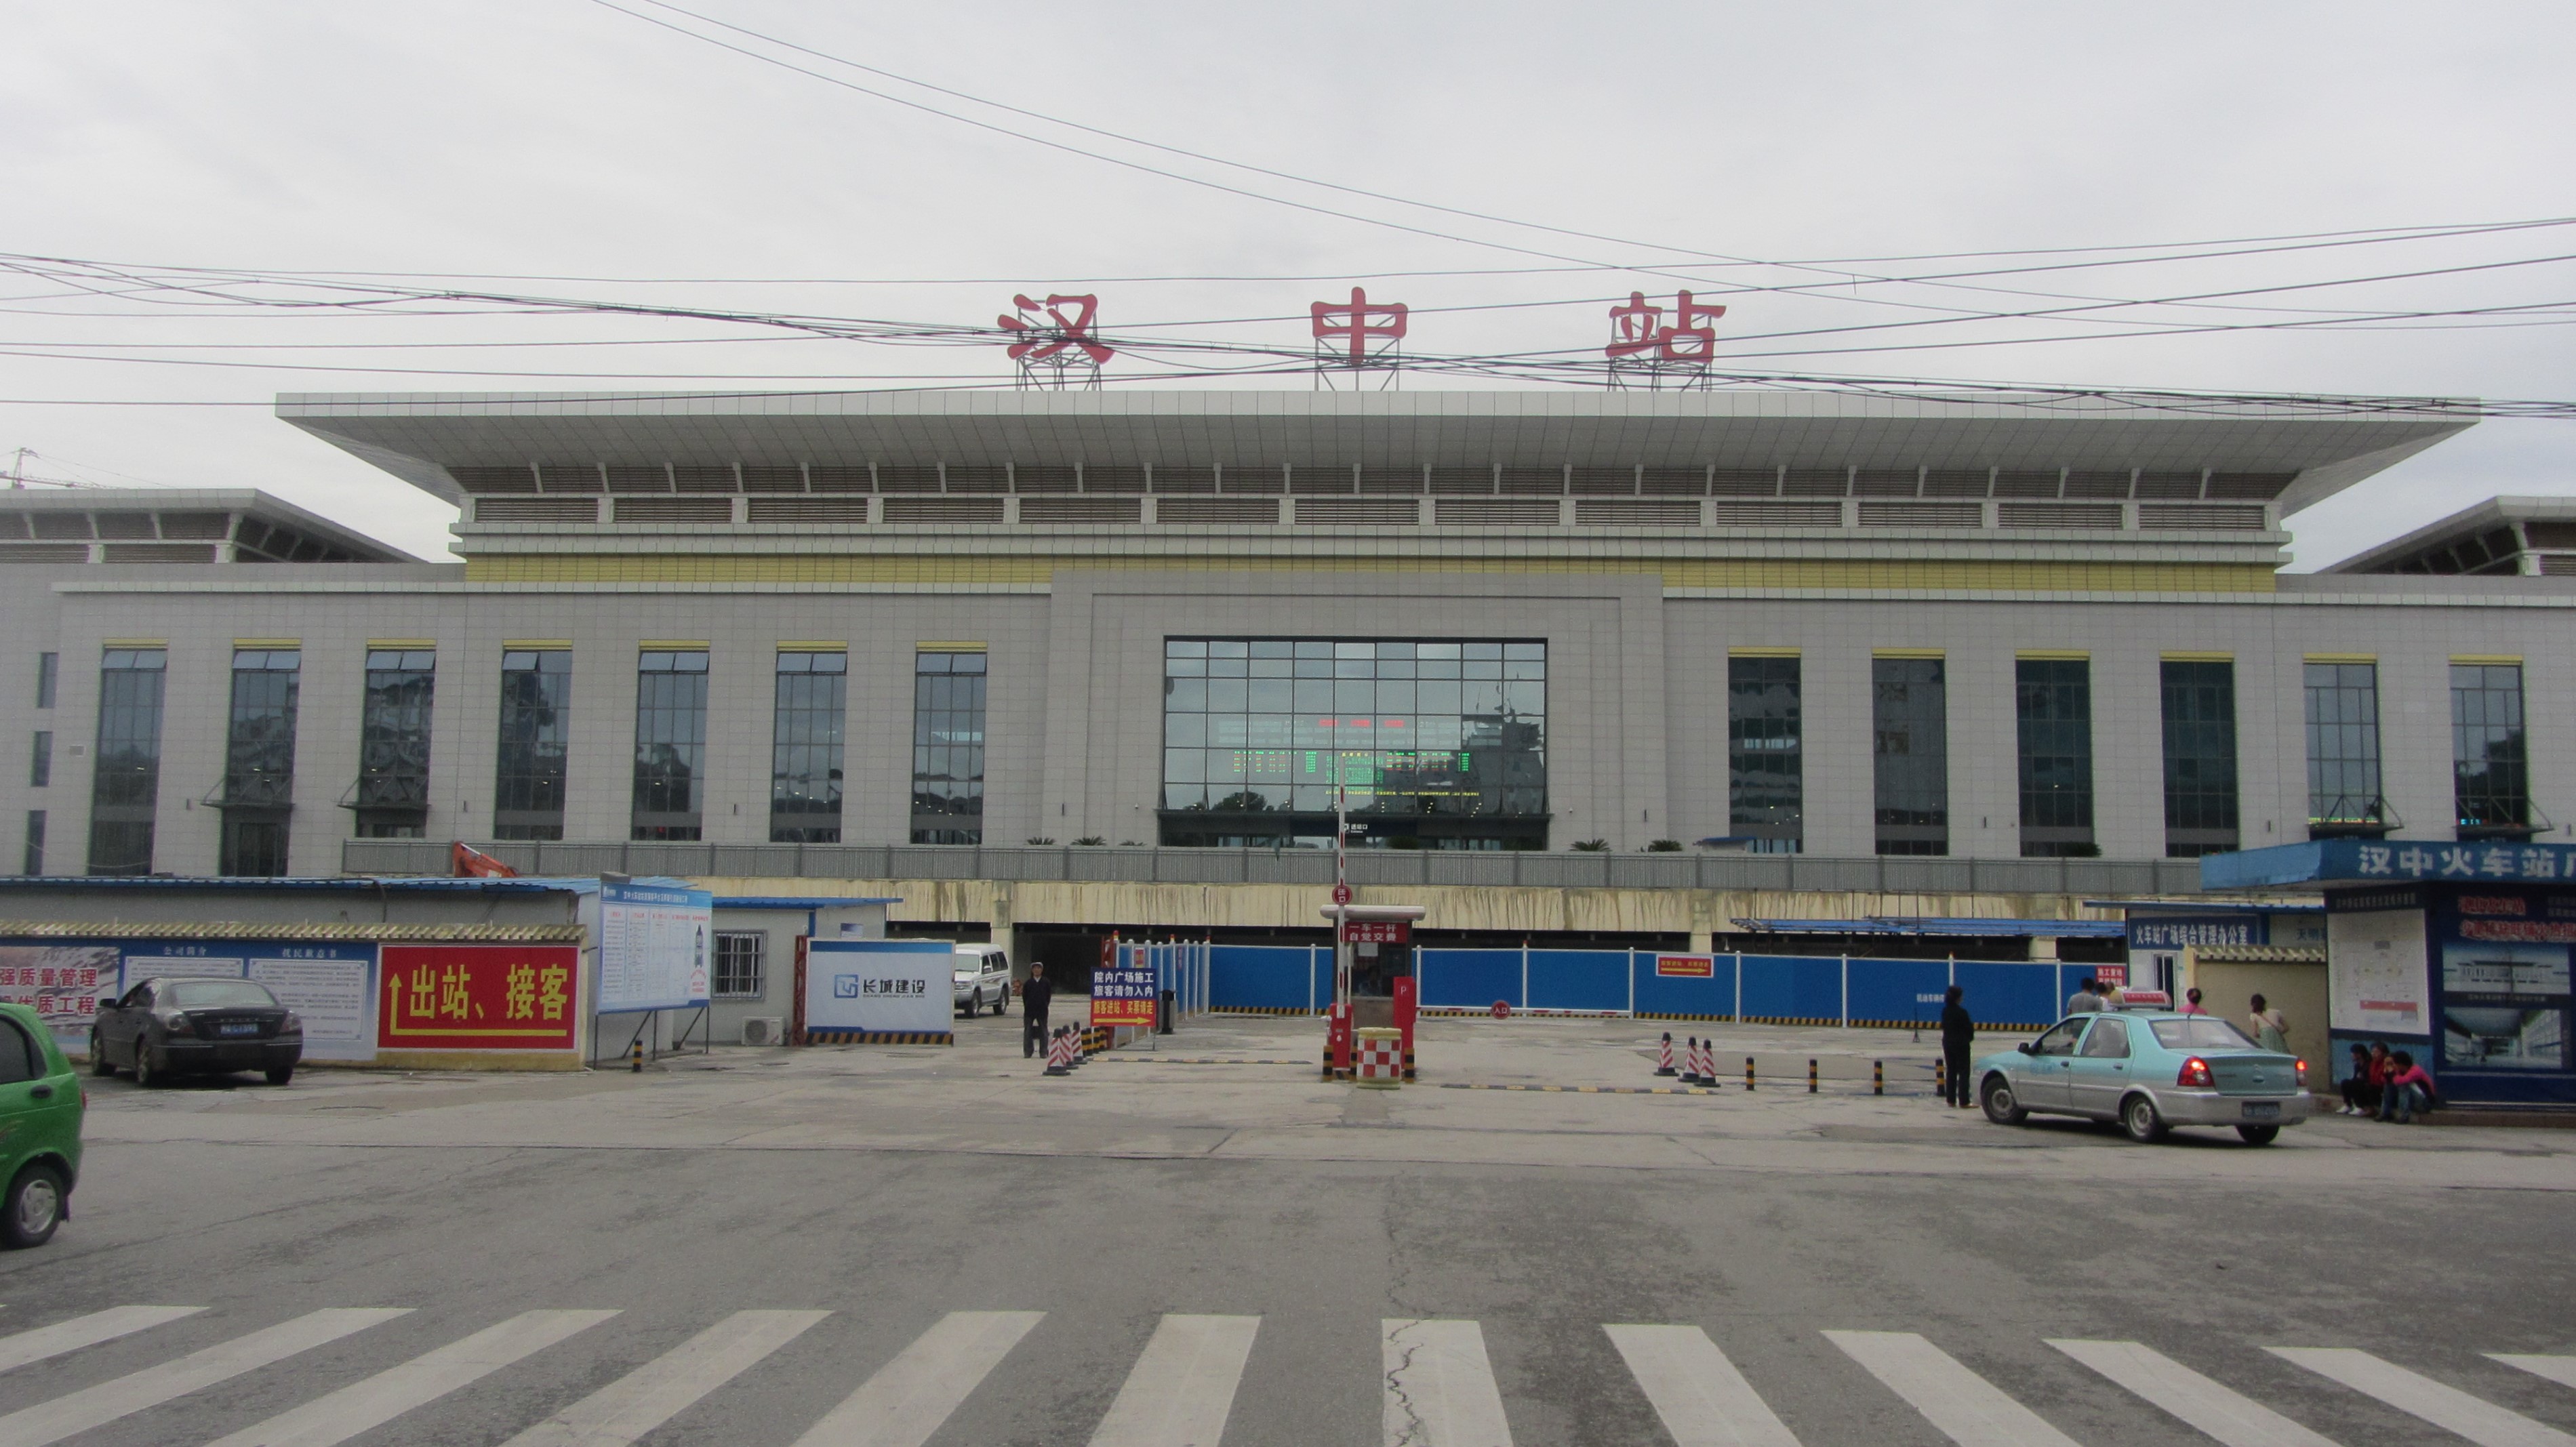 南京有几个汽车站图片 南京有几个汽车站图片大全_社会热点图片_非主流图片站